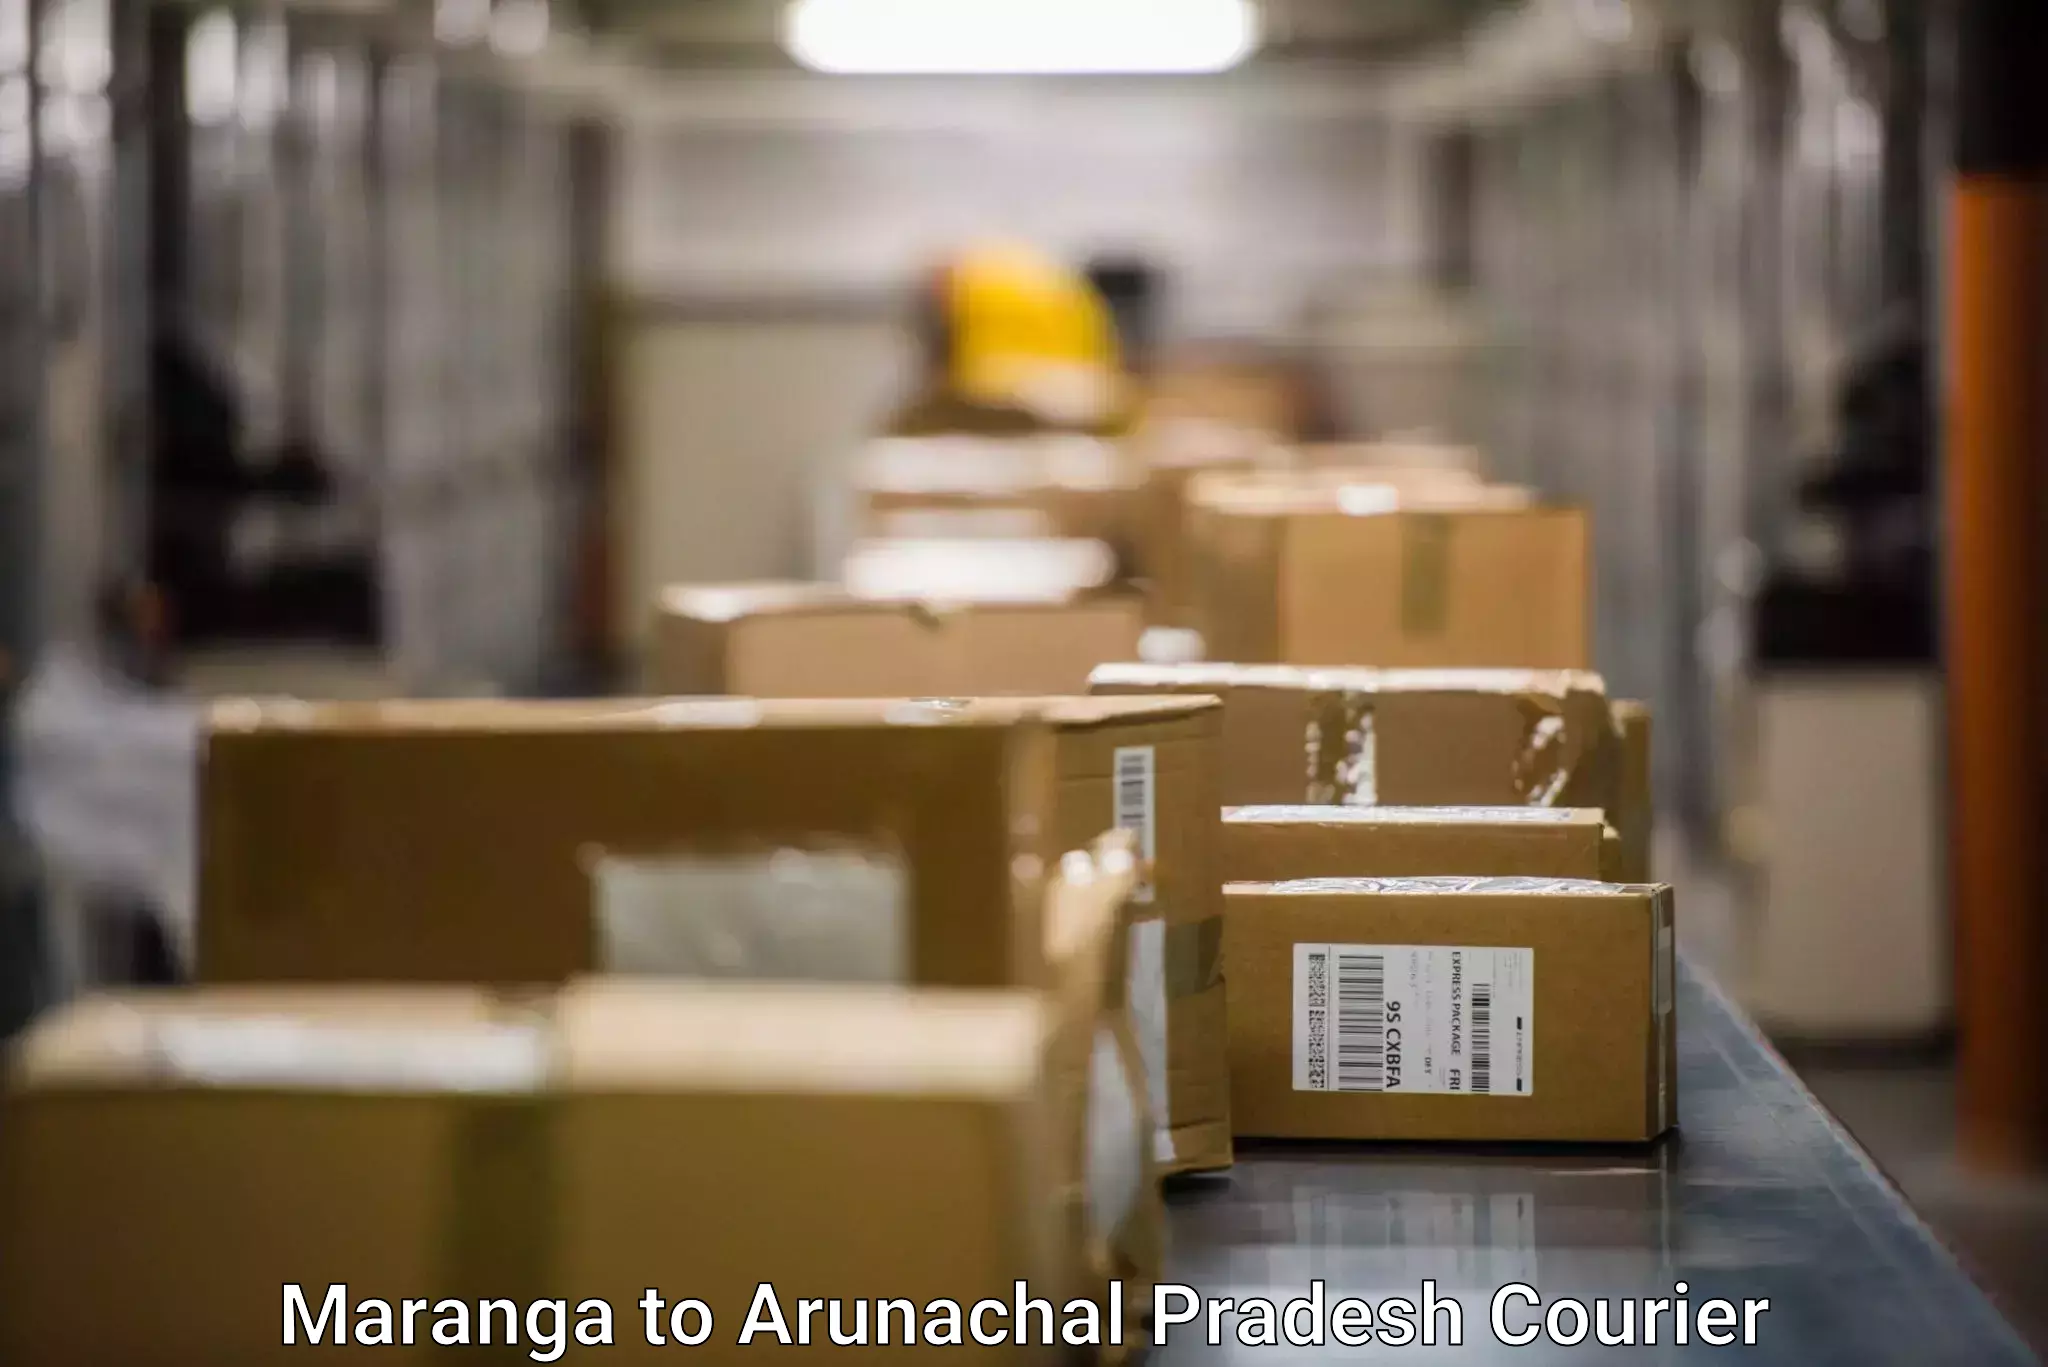 Smart logistics strategies Maranga to Arunachal Pradesh